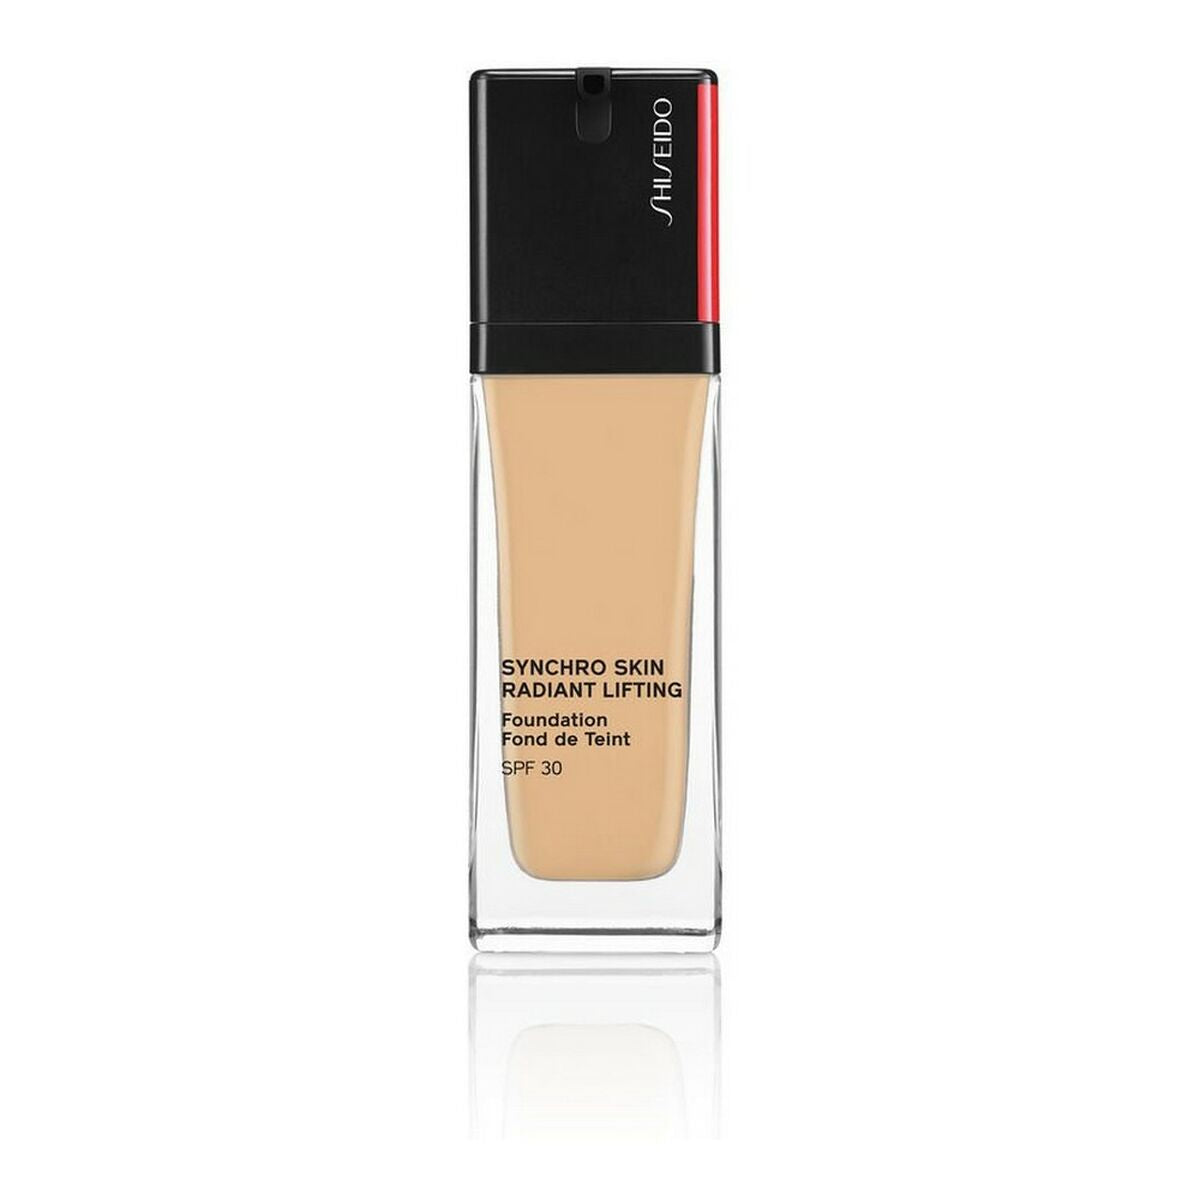 Maggiore liquido Base Synchro Skin Shiseido 30 ml